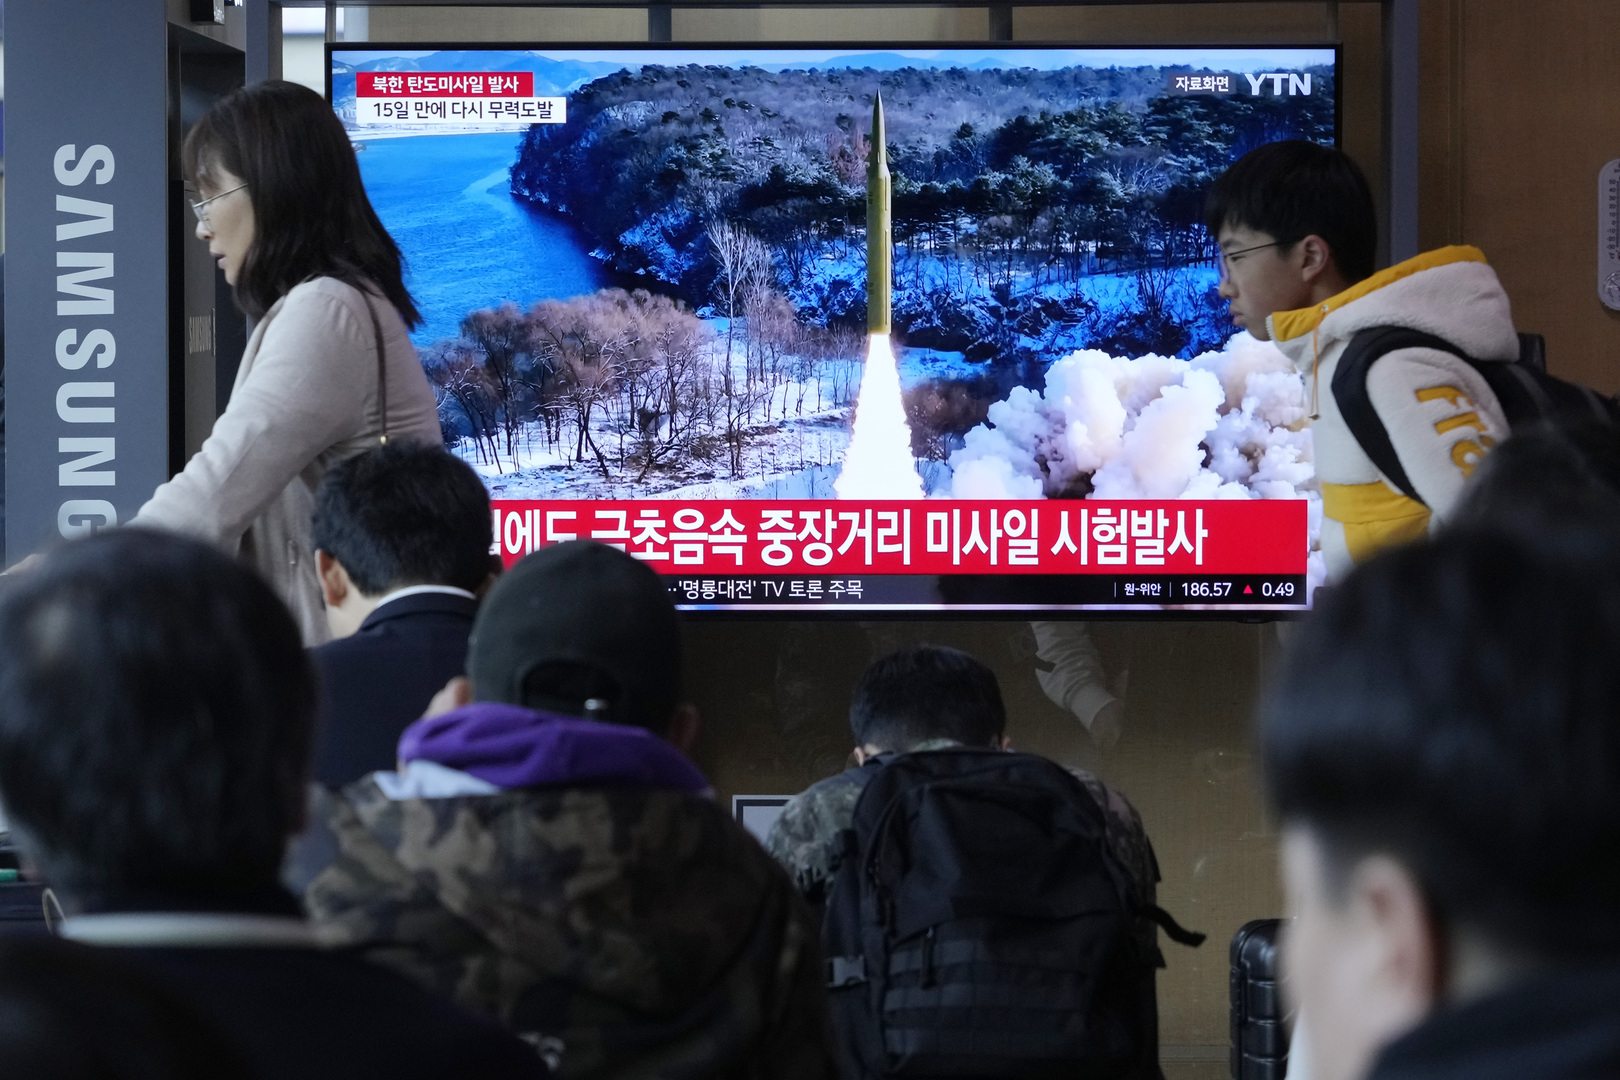 الجيش الكوري الجنوبي يصف تقييمات كوريا الشمالية حول صاروخها بأنها مبالغ فيها جزئيا